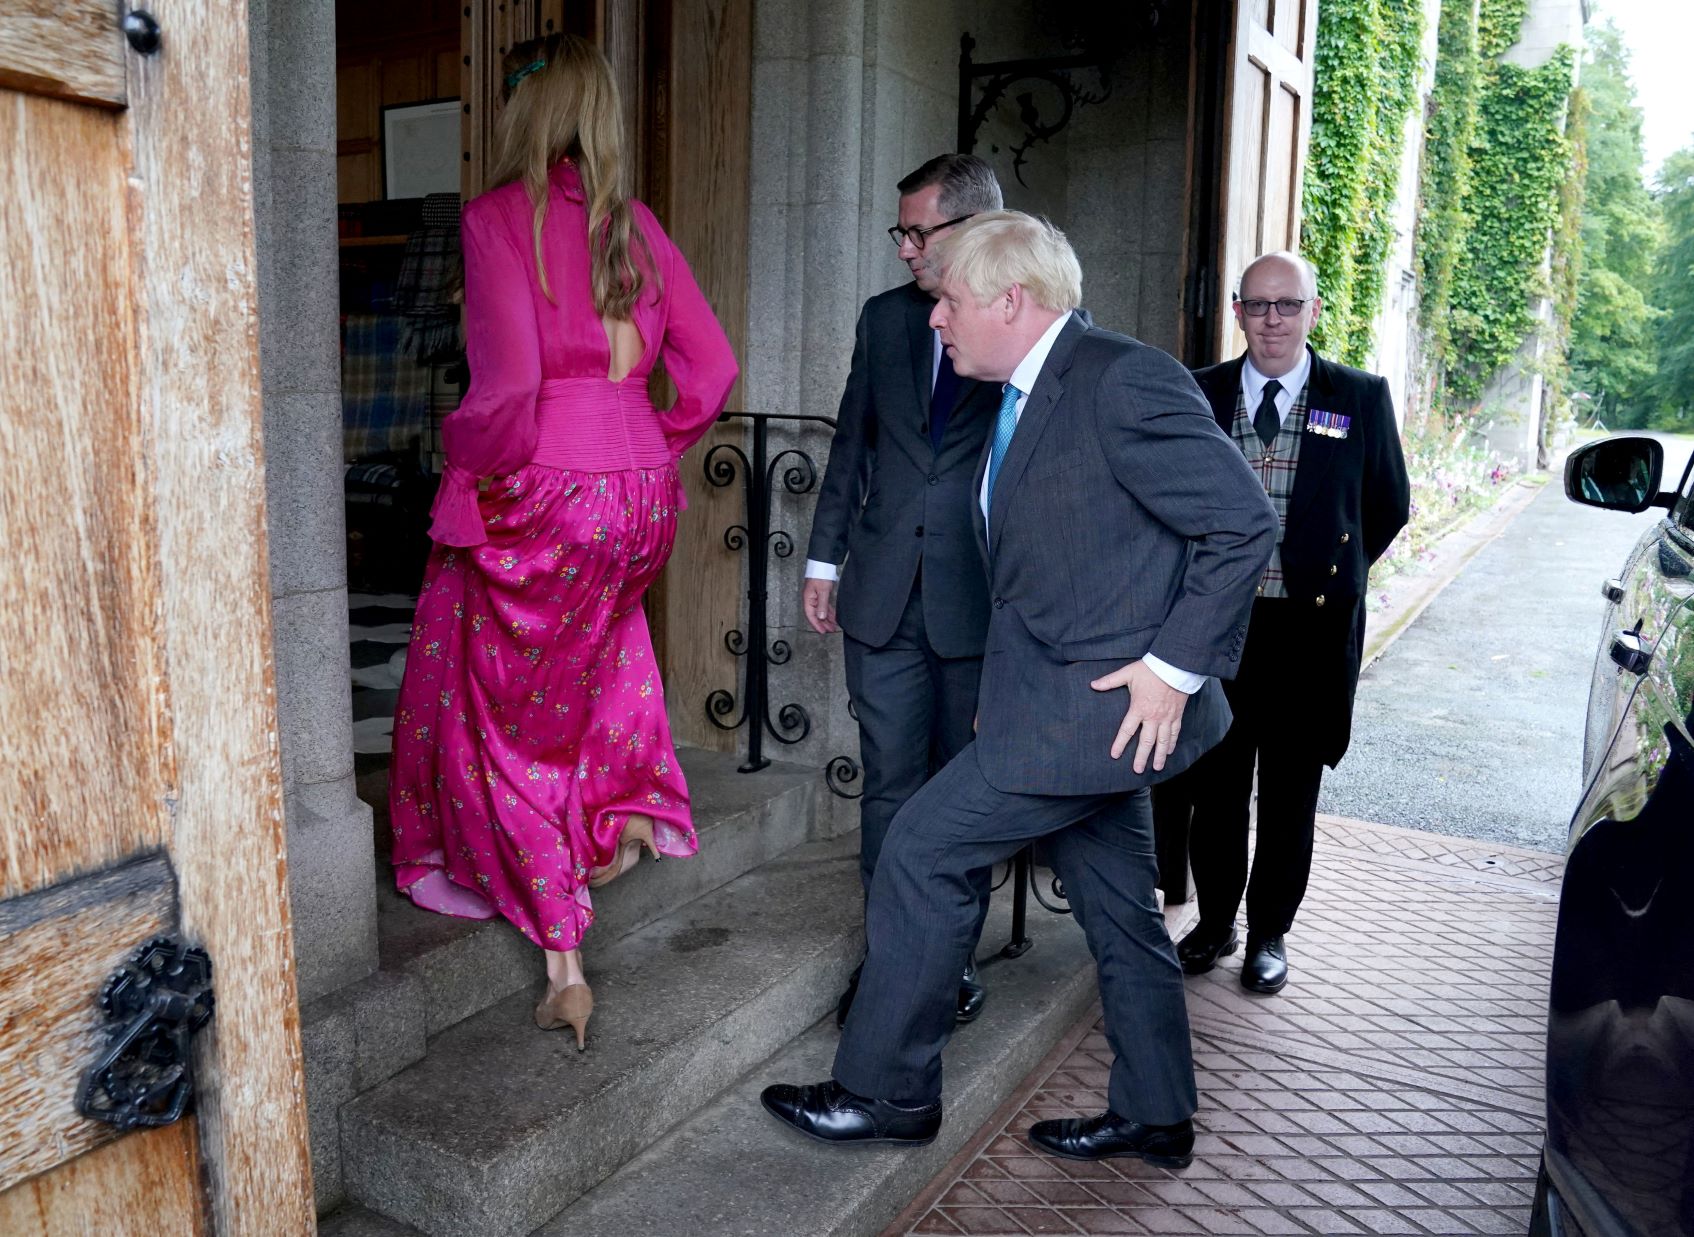 رئيس الوزراء السابق بوريس جونسون وزوجته كاري أثناء توجههما إلى لقاء مع الملكة إليزابيث لإبلاغها عن استقالته بصورة رسمية، في قلعة بالمورال باسكتلندا بتاريخ 06 سبتمبر 2022